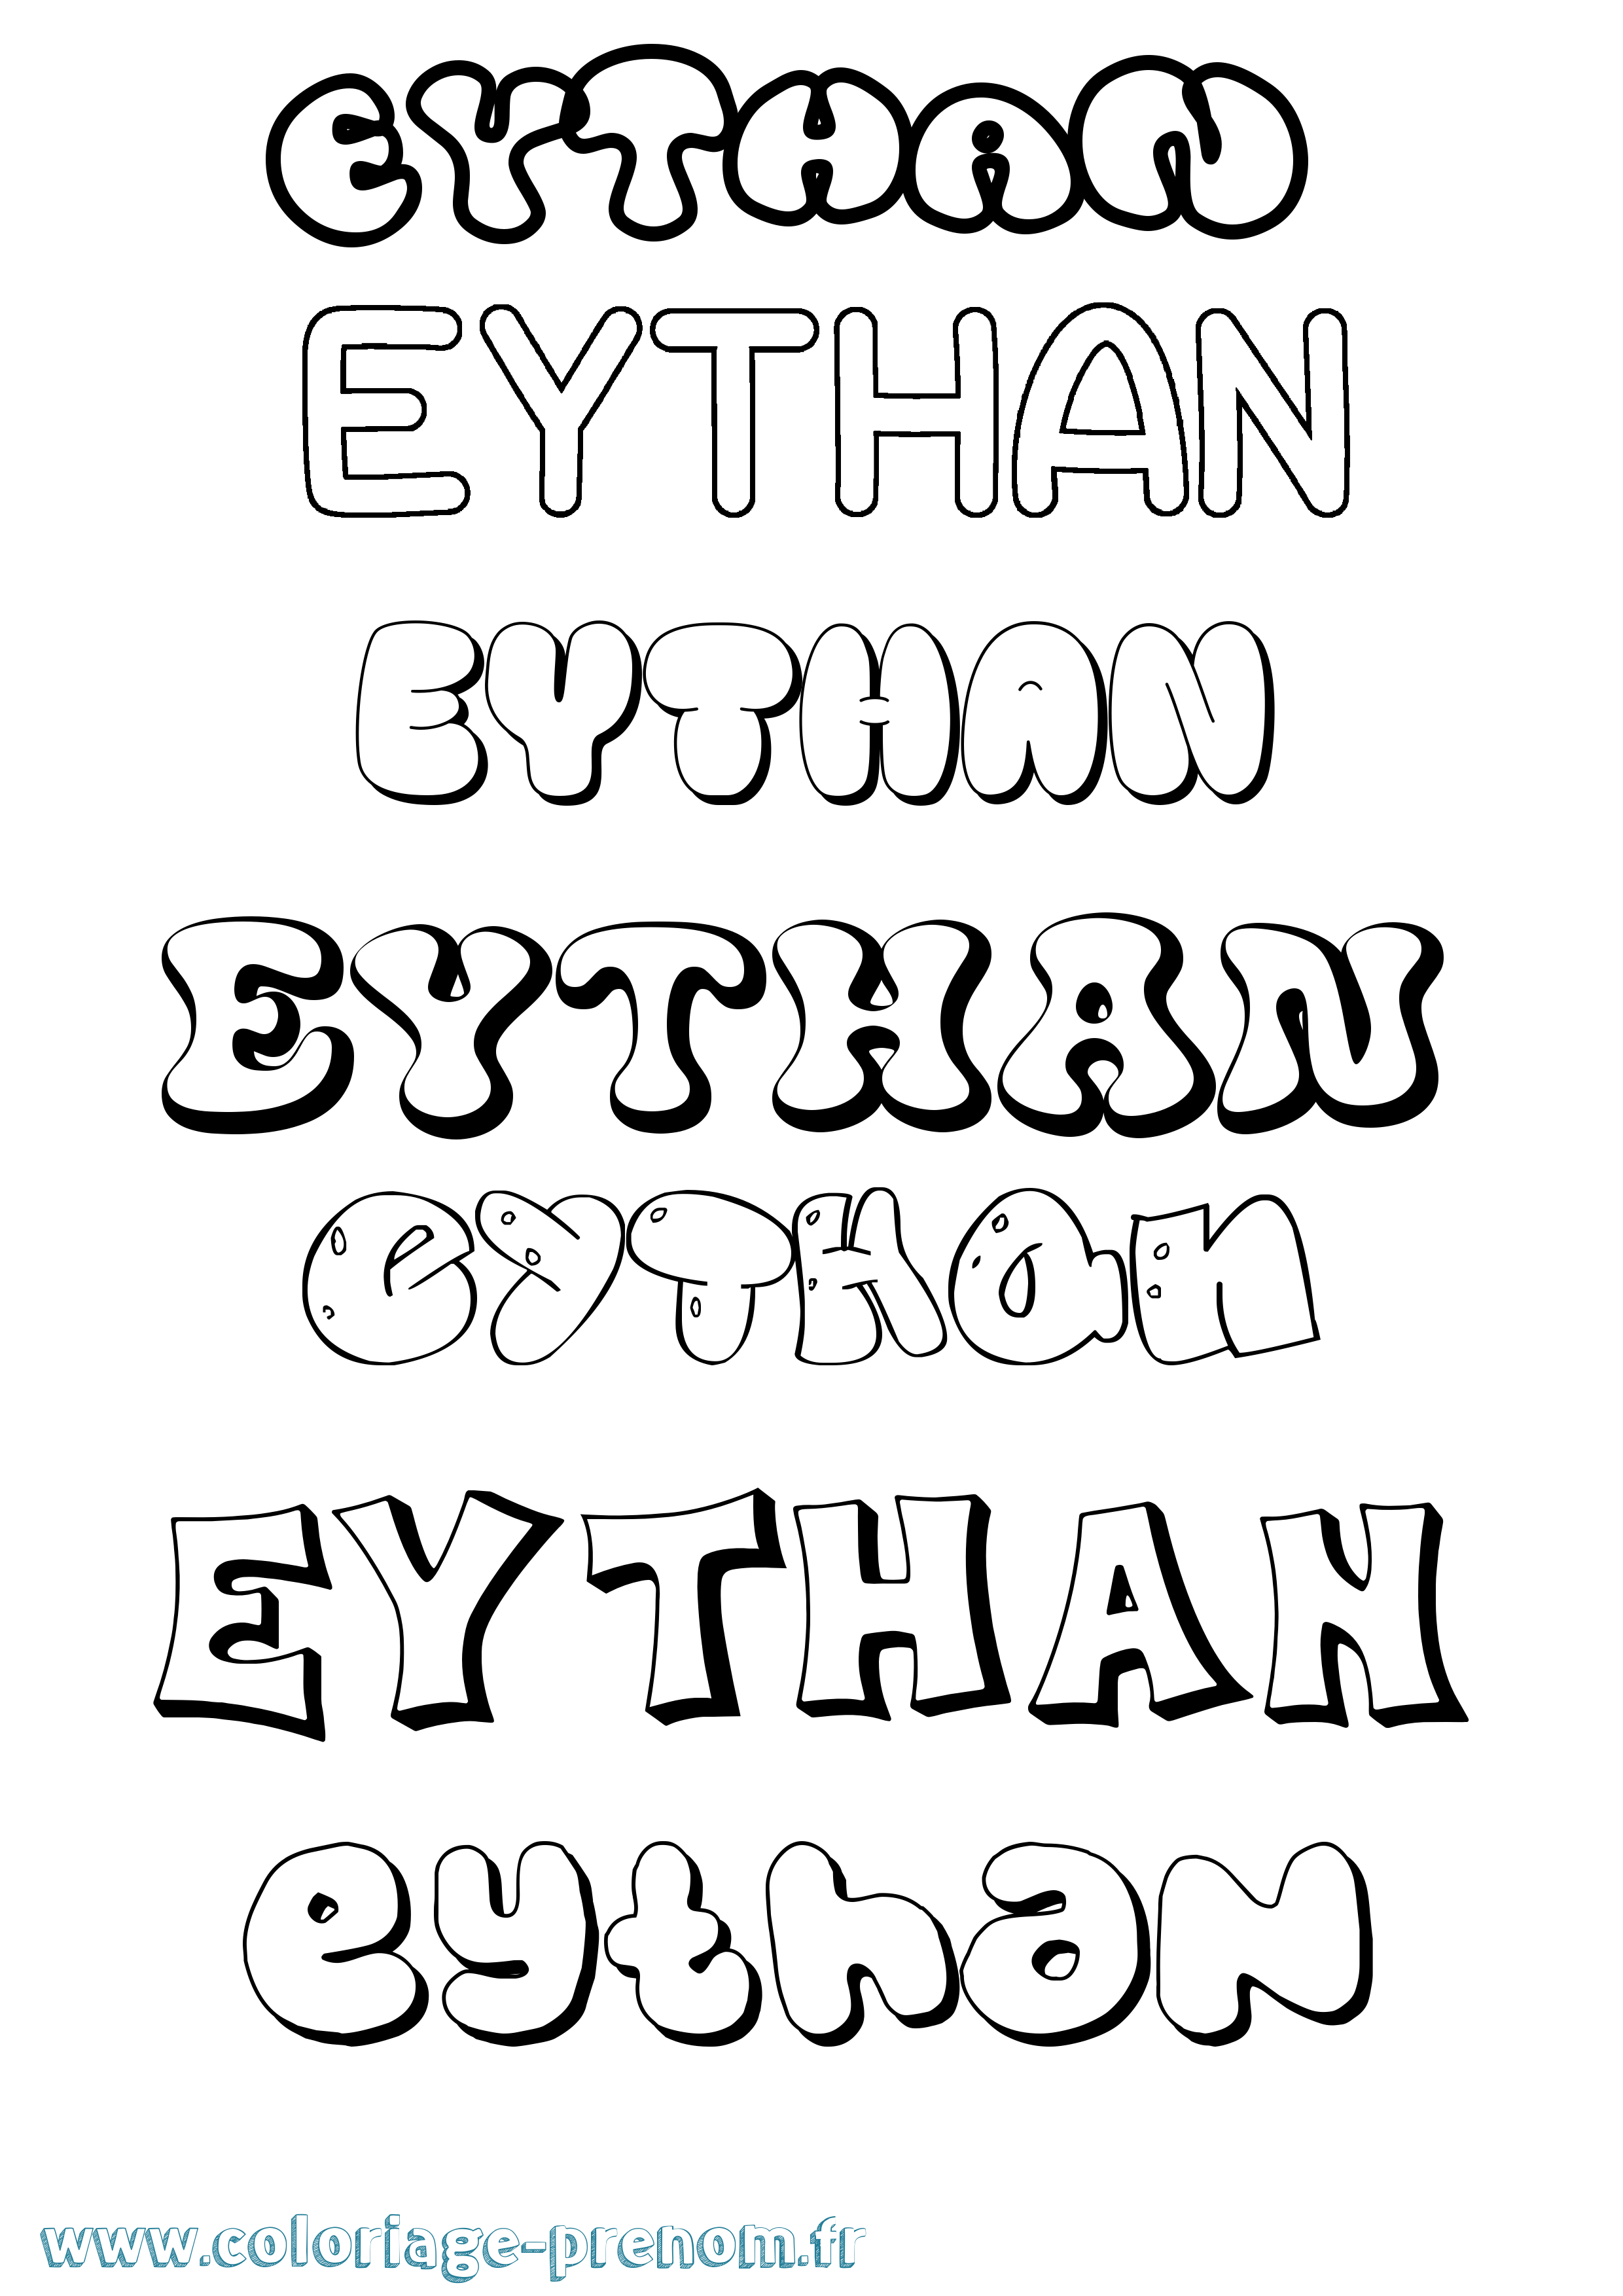 Coloriage prénom Eythan